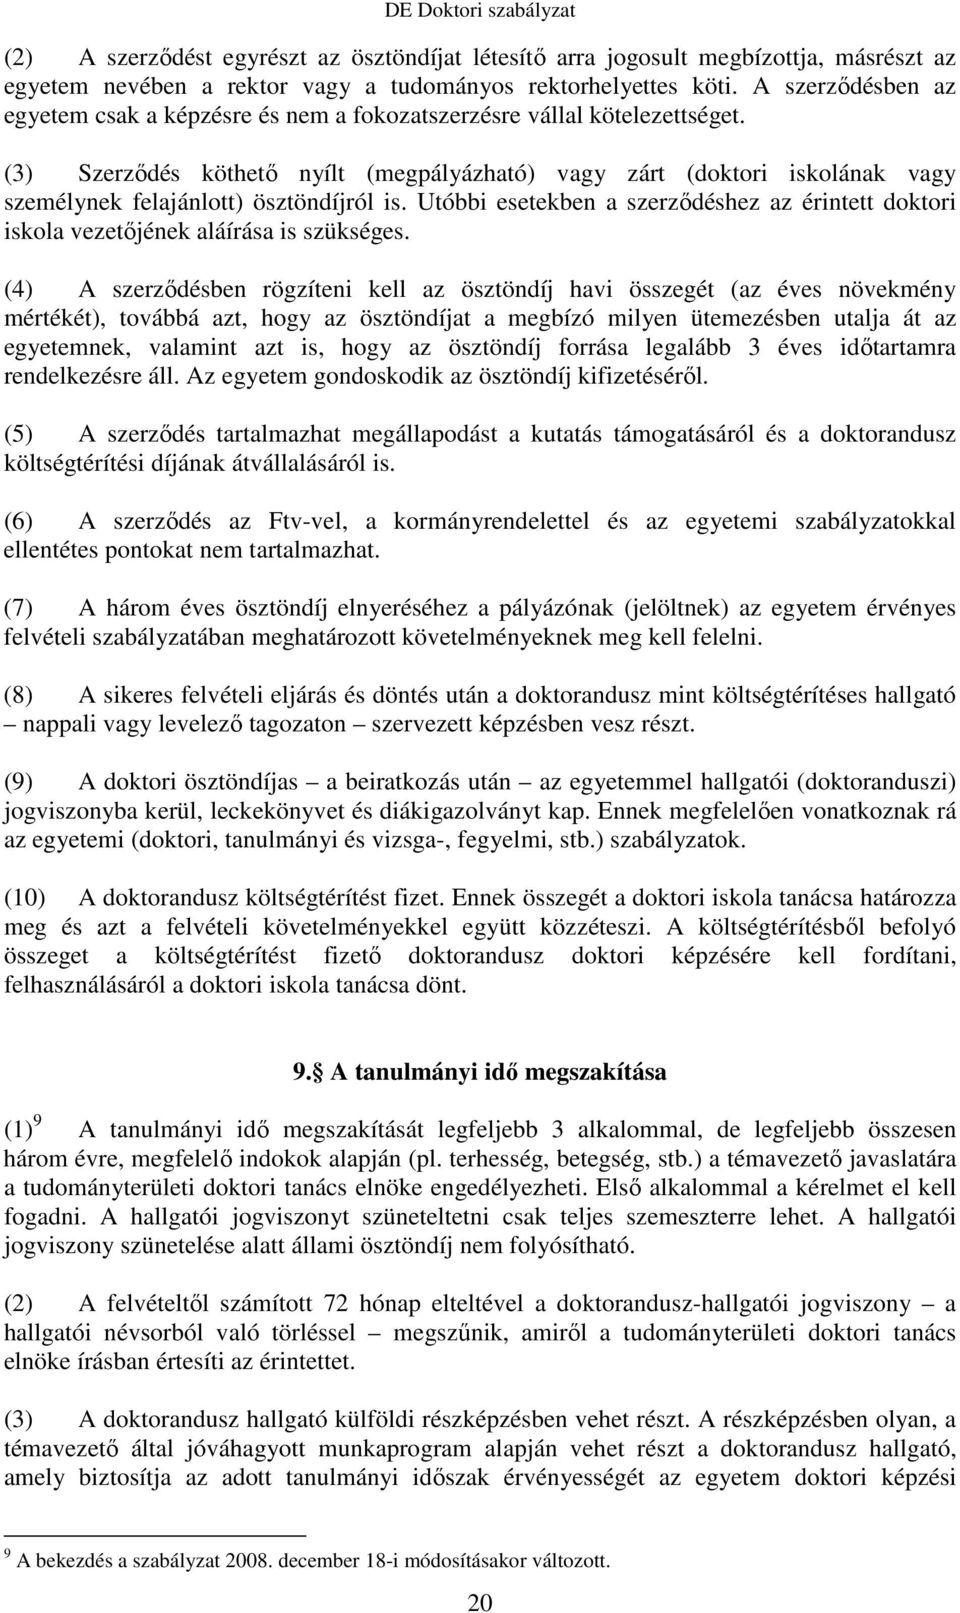 (3) Szerzıdés köthetı nyílt (megpályázható) vagy zárt (doktori iskolának vagy személynek felajánlott) ösztöndíjról is.